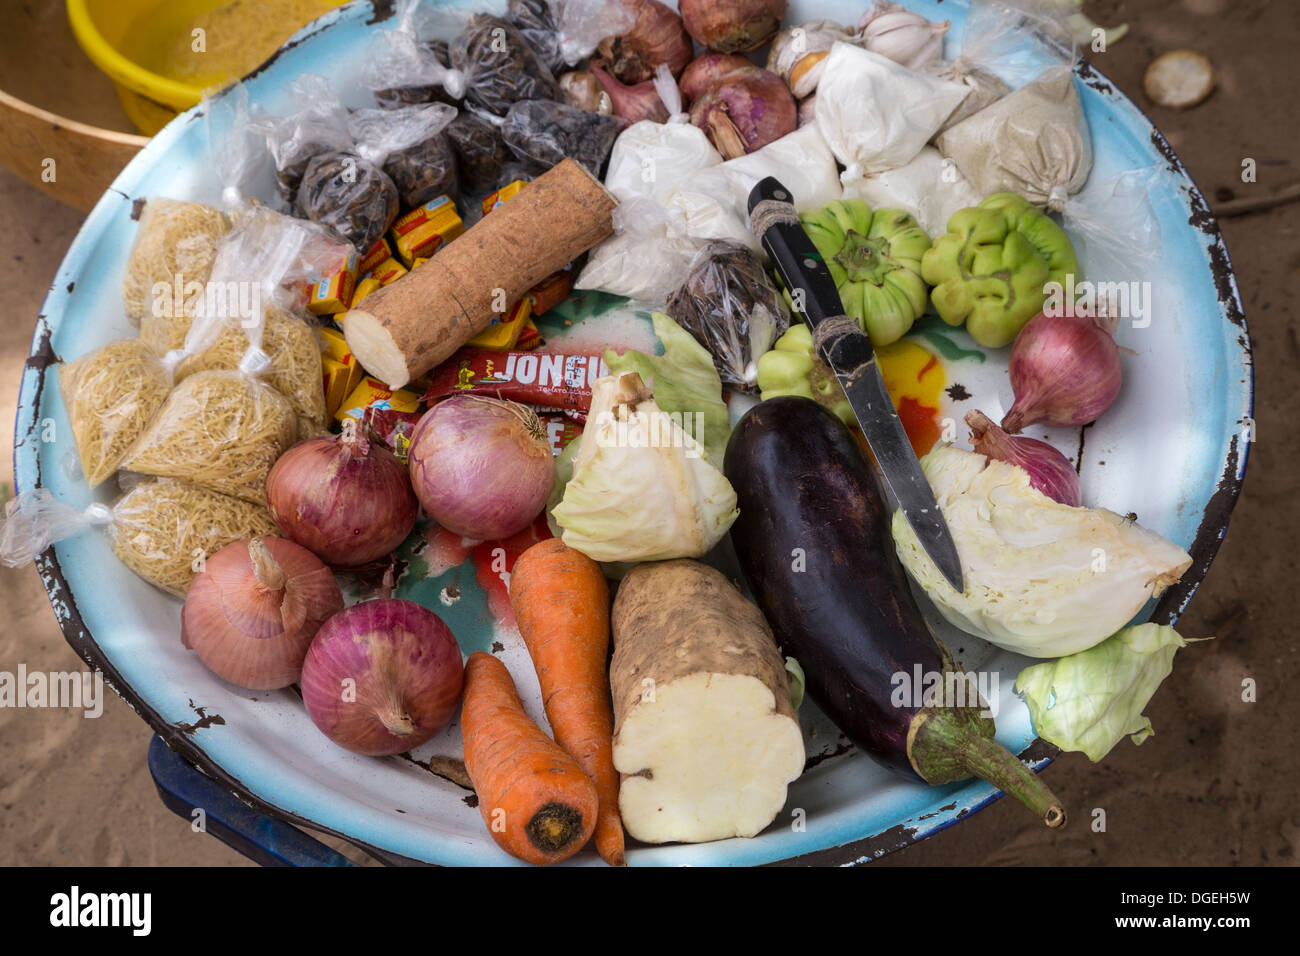 Les légumes et les assaisonnements de bassin pour les vendre à des femmes sans temps de courir sur le marché. Nixo, village près de Sokone, au Sénégal Banque D'Images